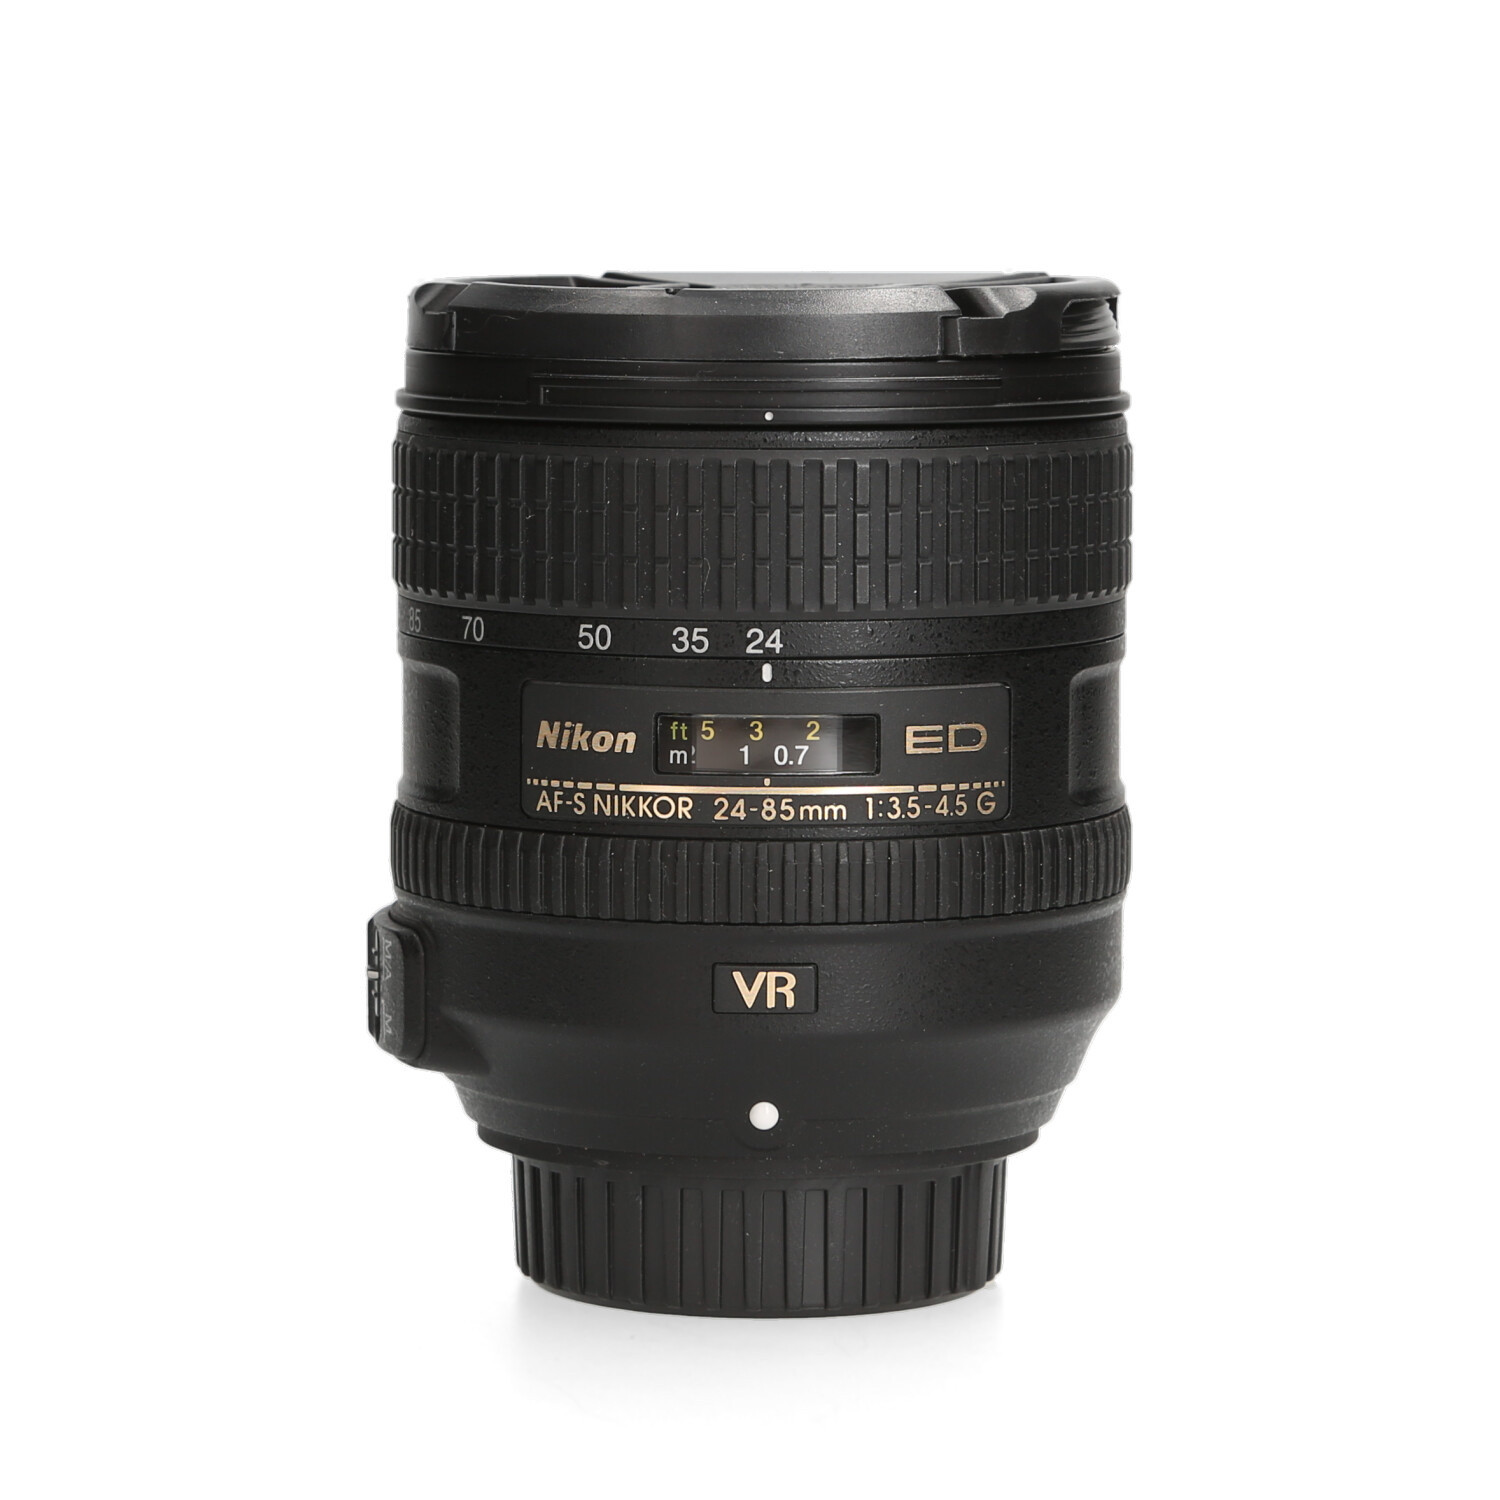 Nikon Nikon 24-85mm 3.5-4.5 G ED AF-S